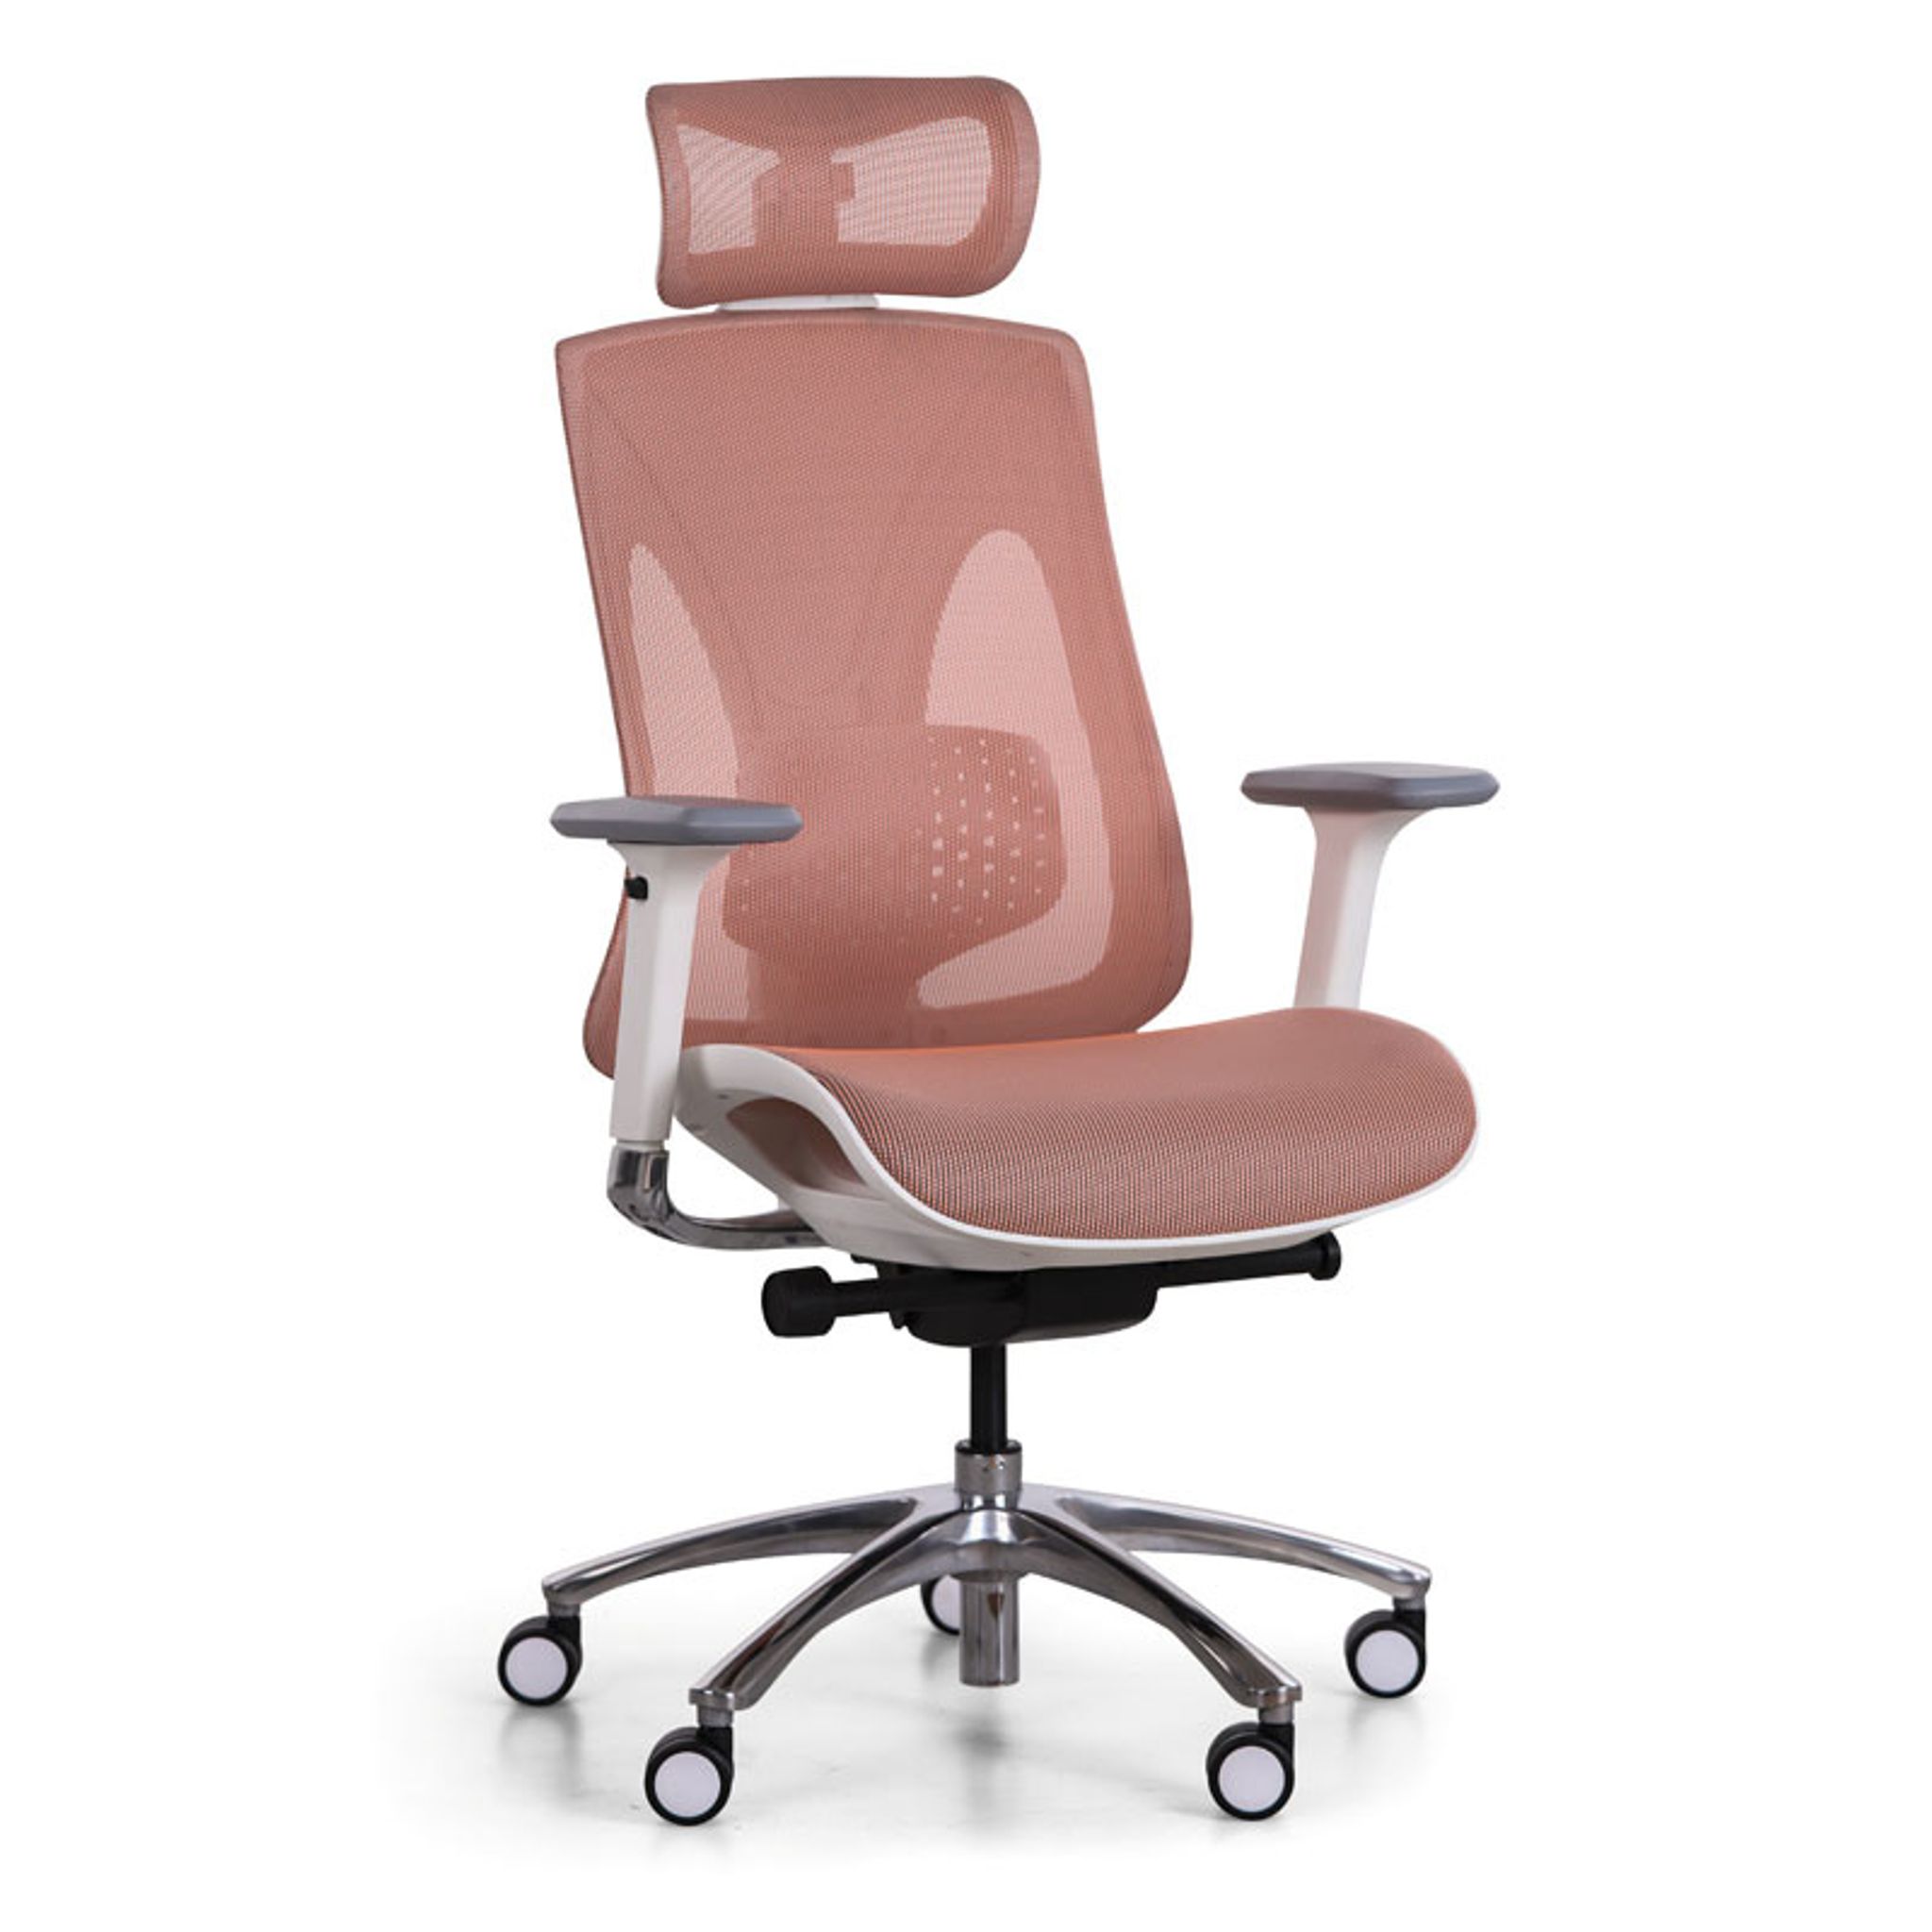 Kancelářská židle COMFORTE, oranžová